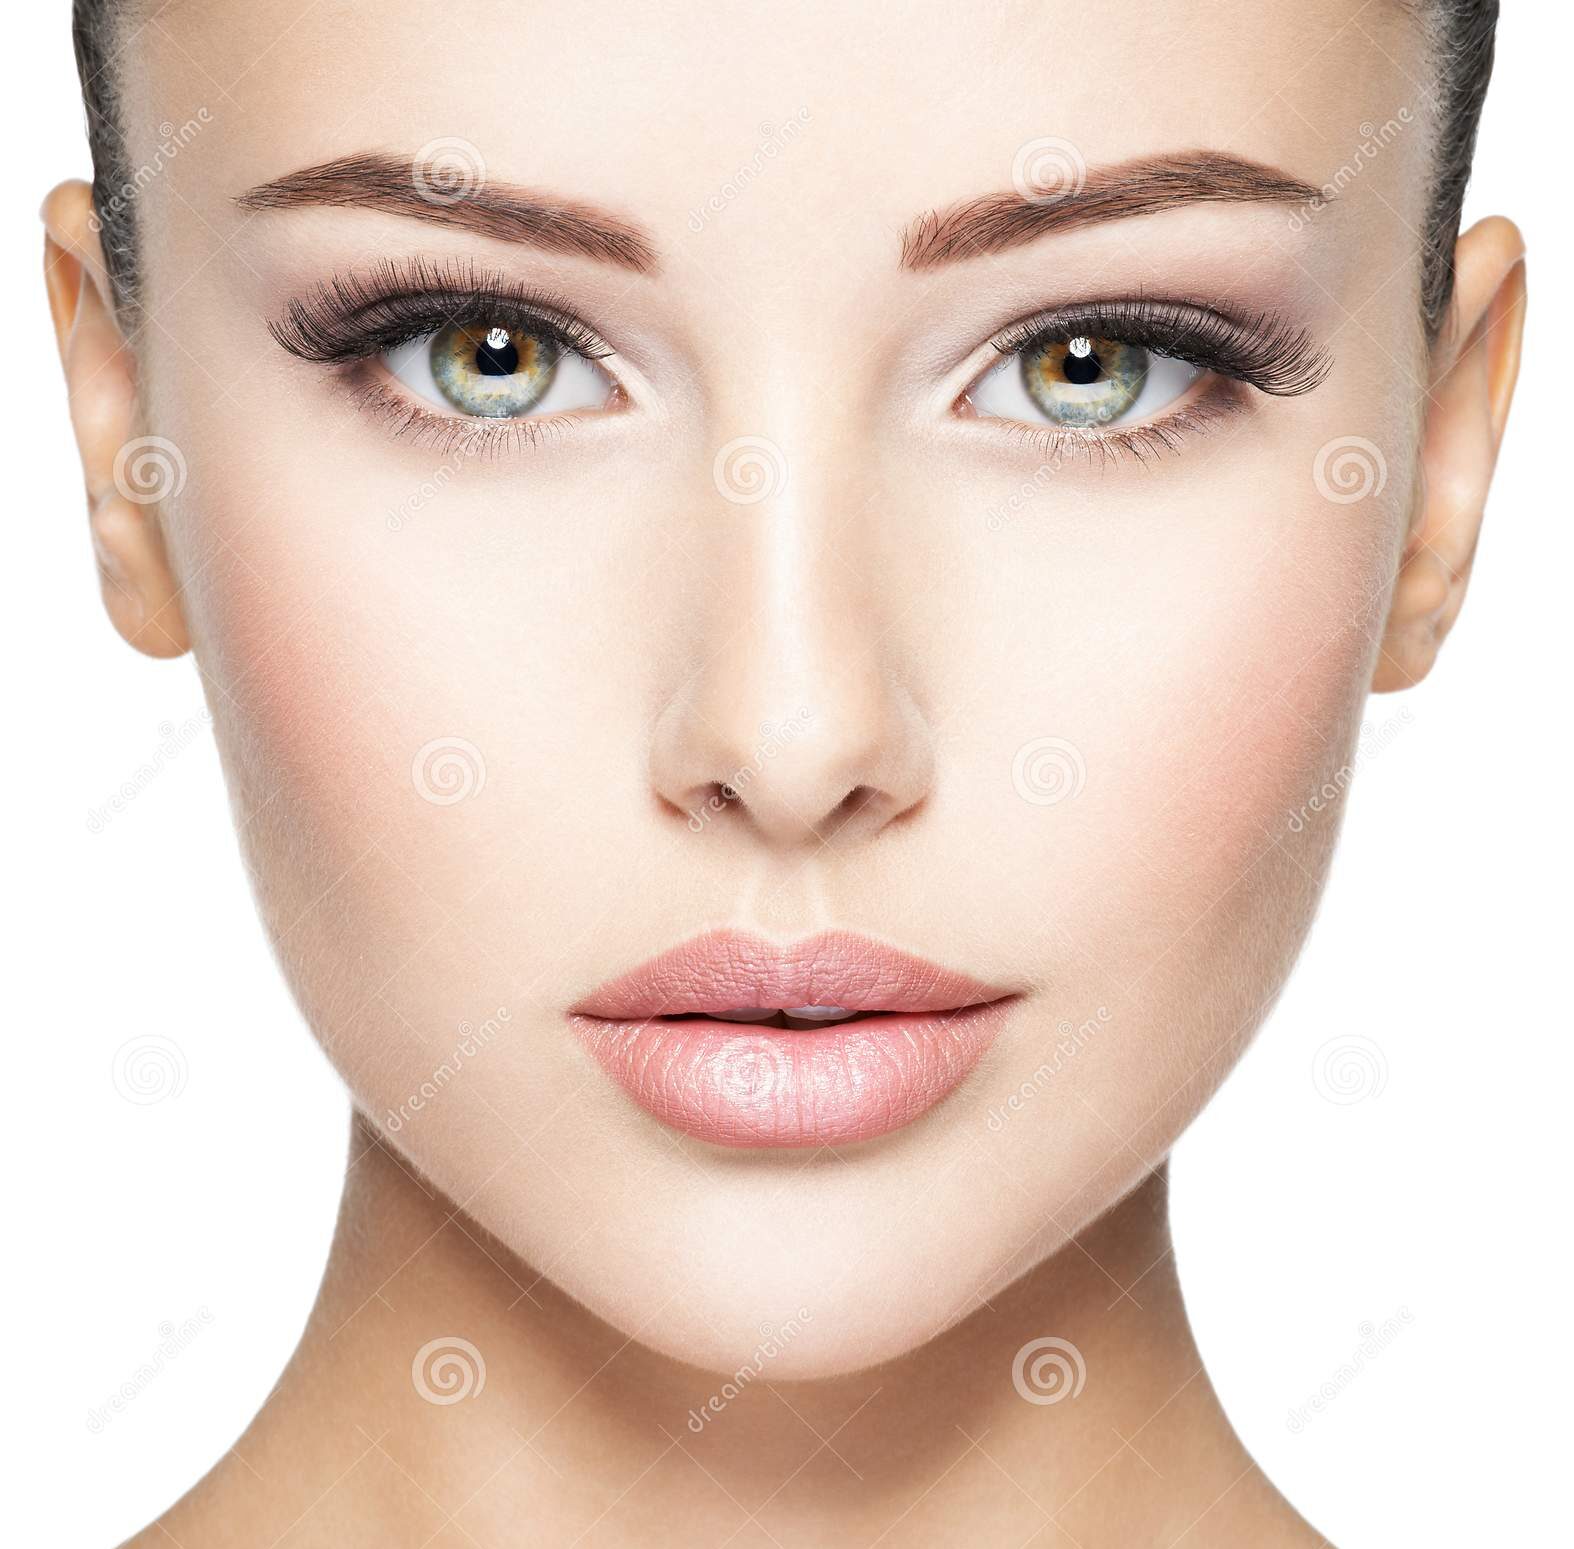 MC Modern Skin aesthetician shoreline - Clinical Therapeutic Facial